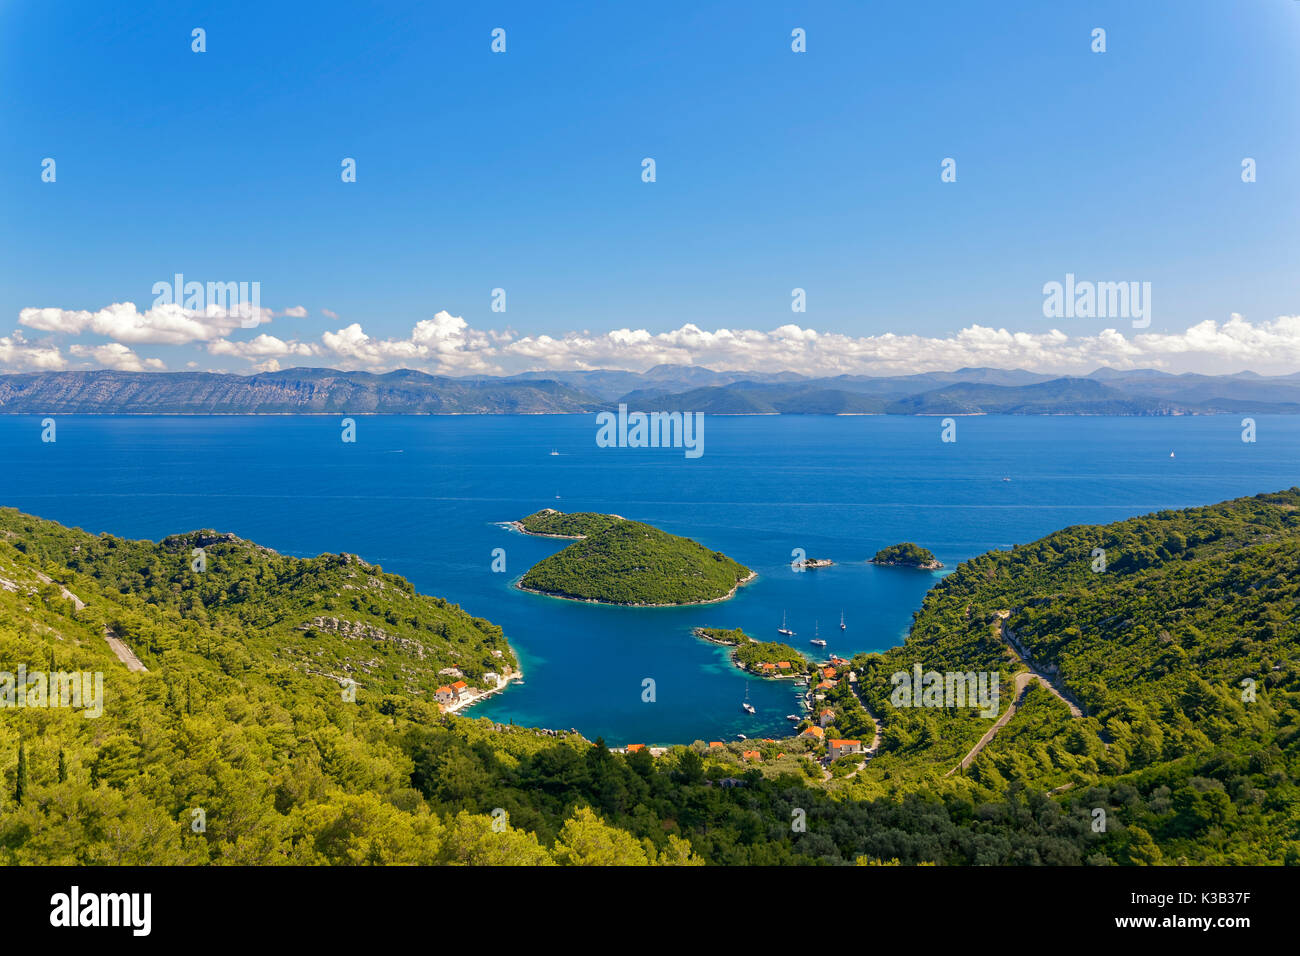 Port de prozurska luka avec une vue sur la partie continentale de la Croatie, l'île de Mljet, Dubrovnik neretva-, Dalmatie, Croatie Banque D'Images